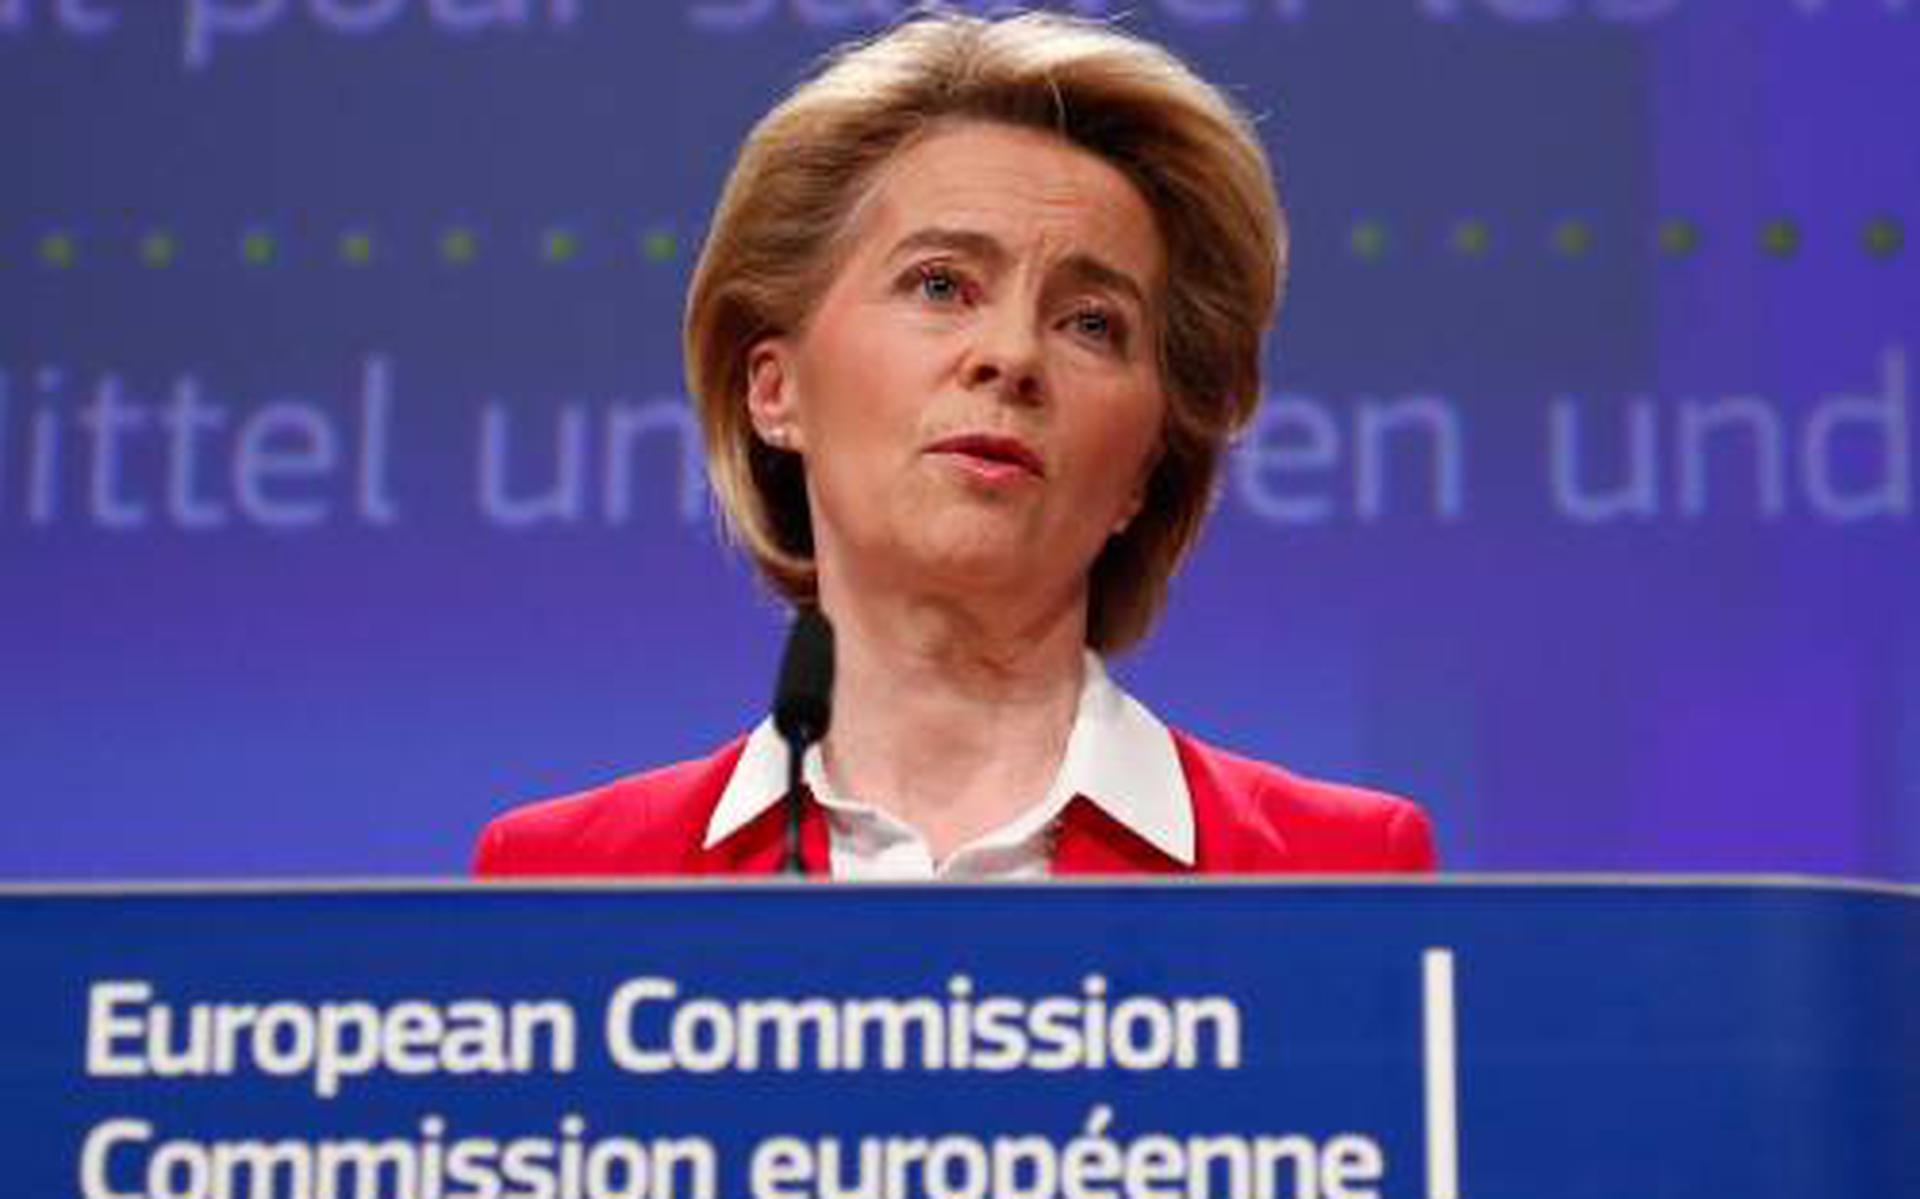 Chef Europese Commissie verwacht vaccin eind dit jaar